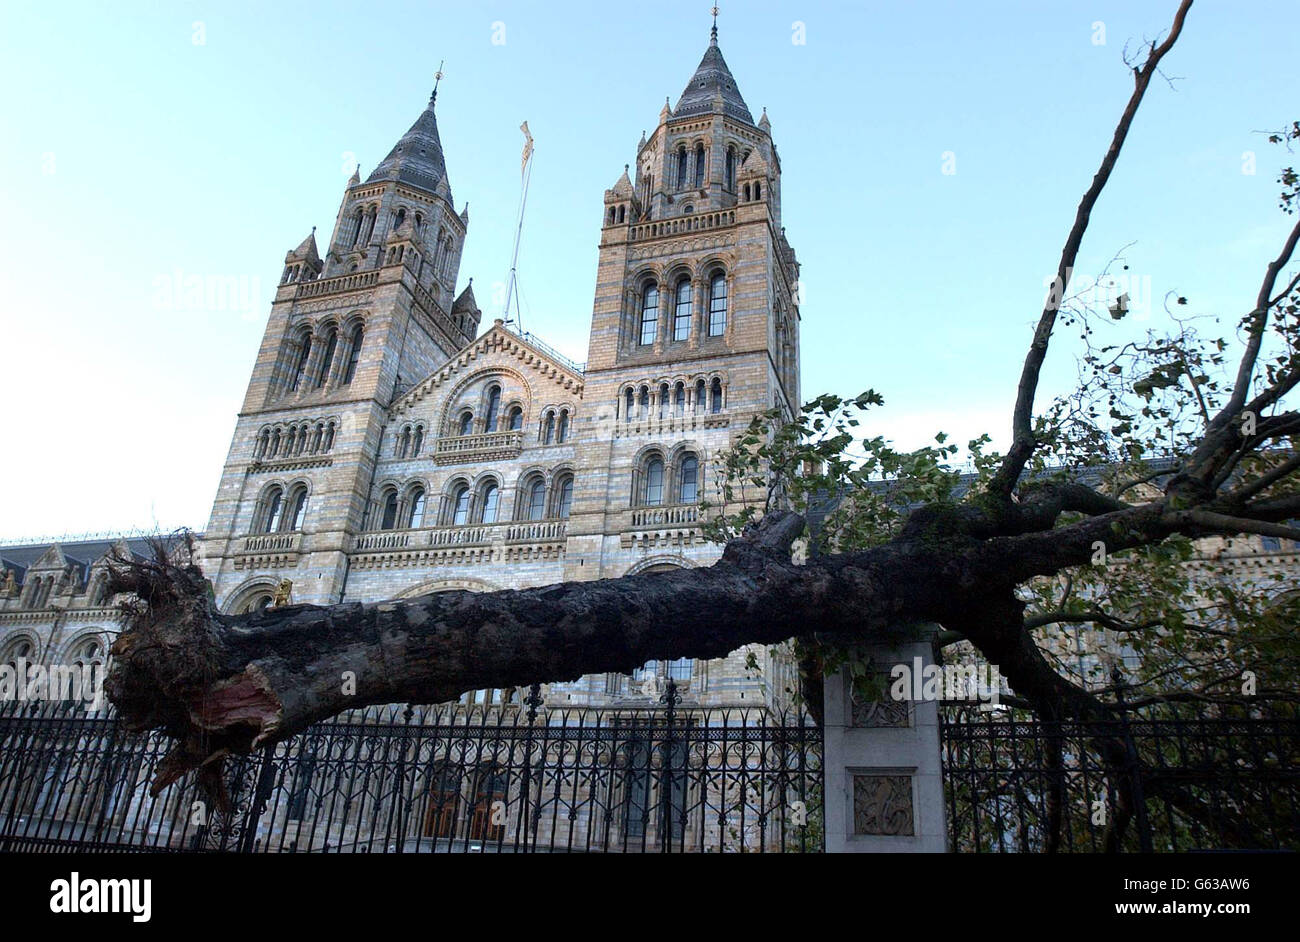 Un albero viene sradicato e soffiato su ringhiere fuori dal Natural History Museum di Londra da forti galere che hanno colpito molte aree della Gran Bretagna, con gli esperti che prevedono che il peggio deve ancora venire. * la velocità del vento più alta registrata era una raffica di 96,6 mph alle Mumbles, nel Galles del sud, a circa 7 del mattino, mentre altrove, raffiche di tra 60-70mph stavano causando danni ad alberi e tegole. In gran parte del sud della Gran Bretagna e del Galles si avvertivano velocità del vento comprese tra 40 e 60 mph. Foto Stock